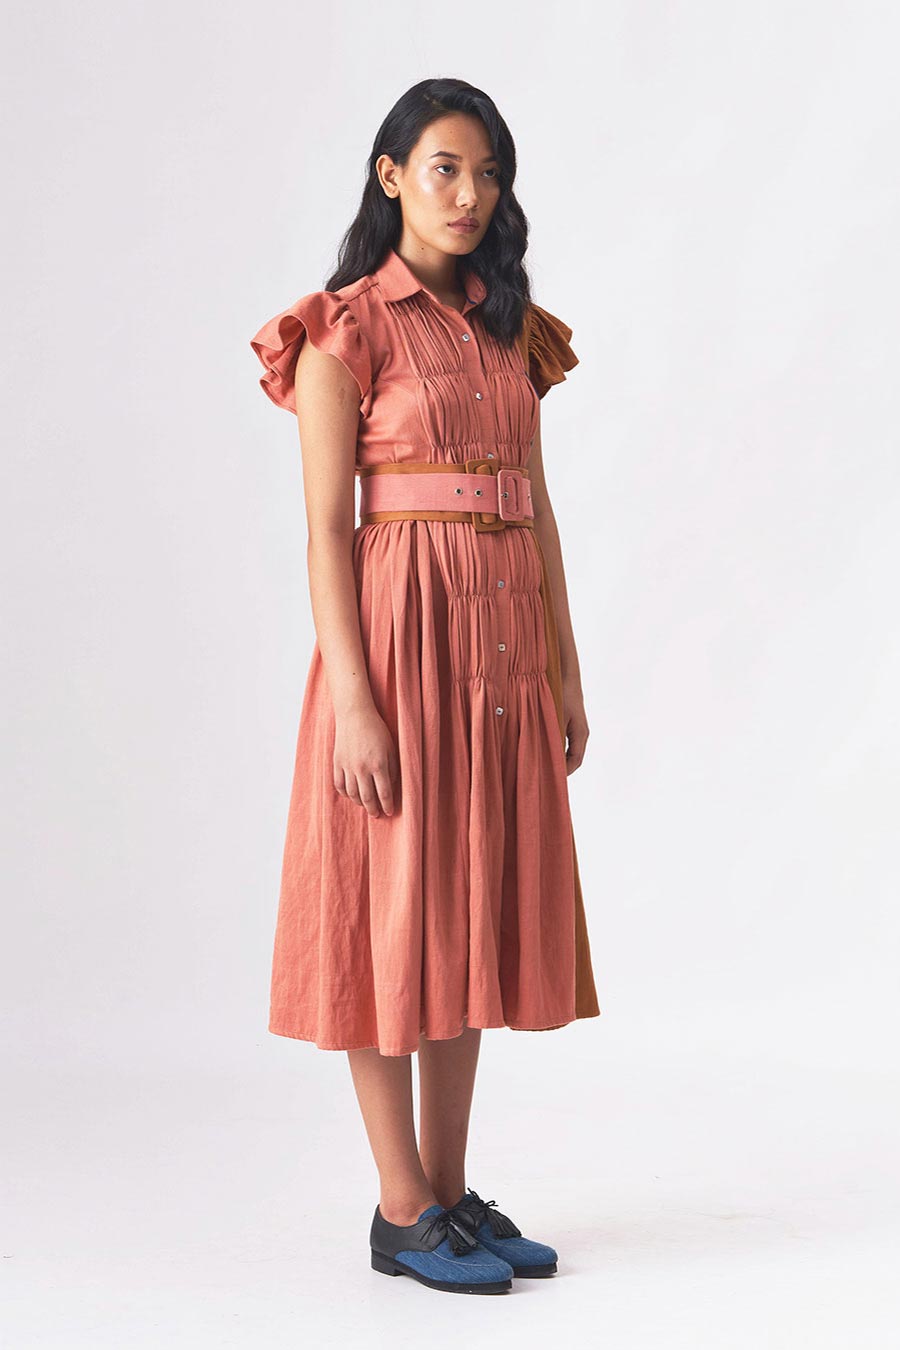 DARLENE - Handloom Denim A-Line Dress